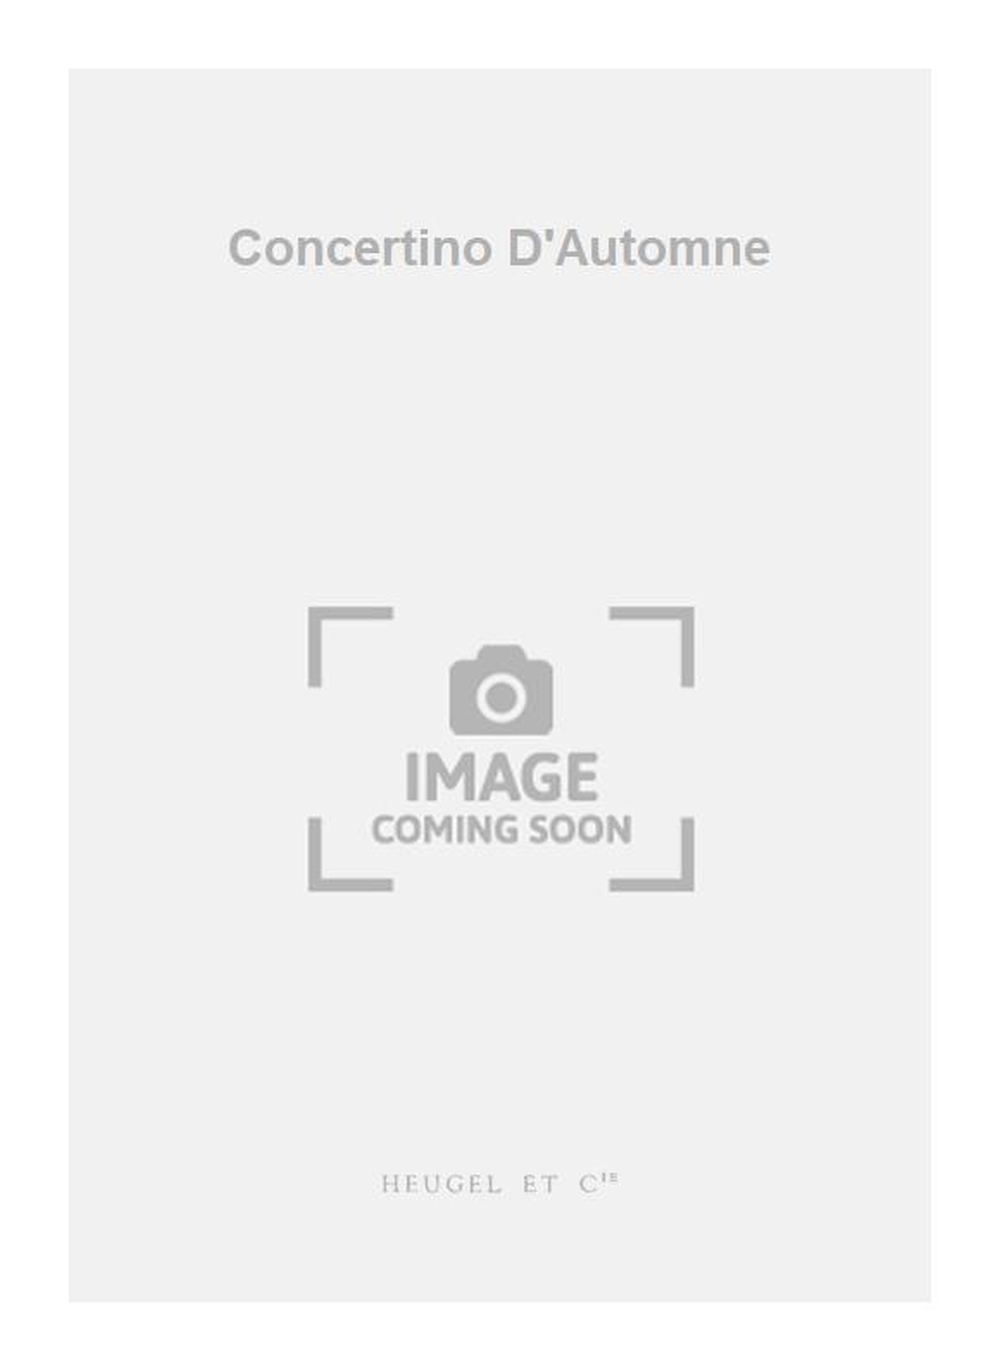 Darius Milhaud: Concertino D'Automne